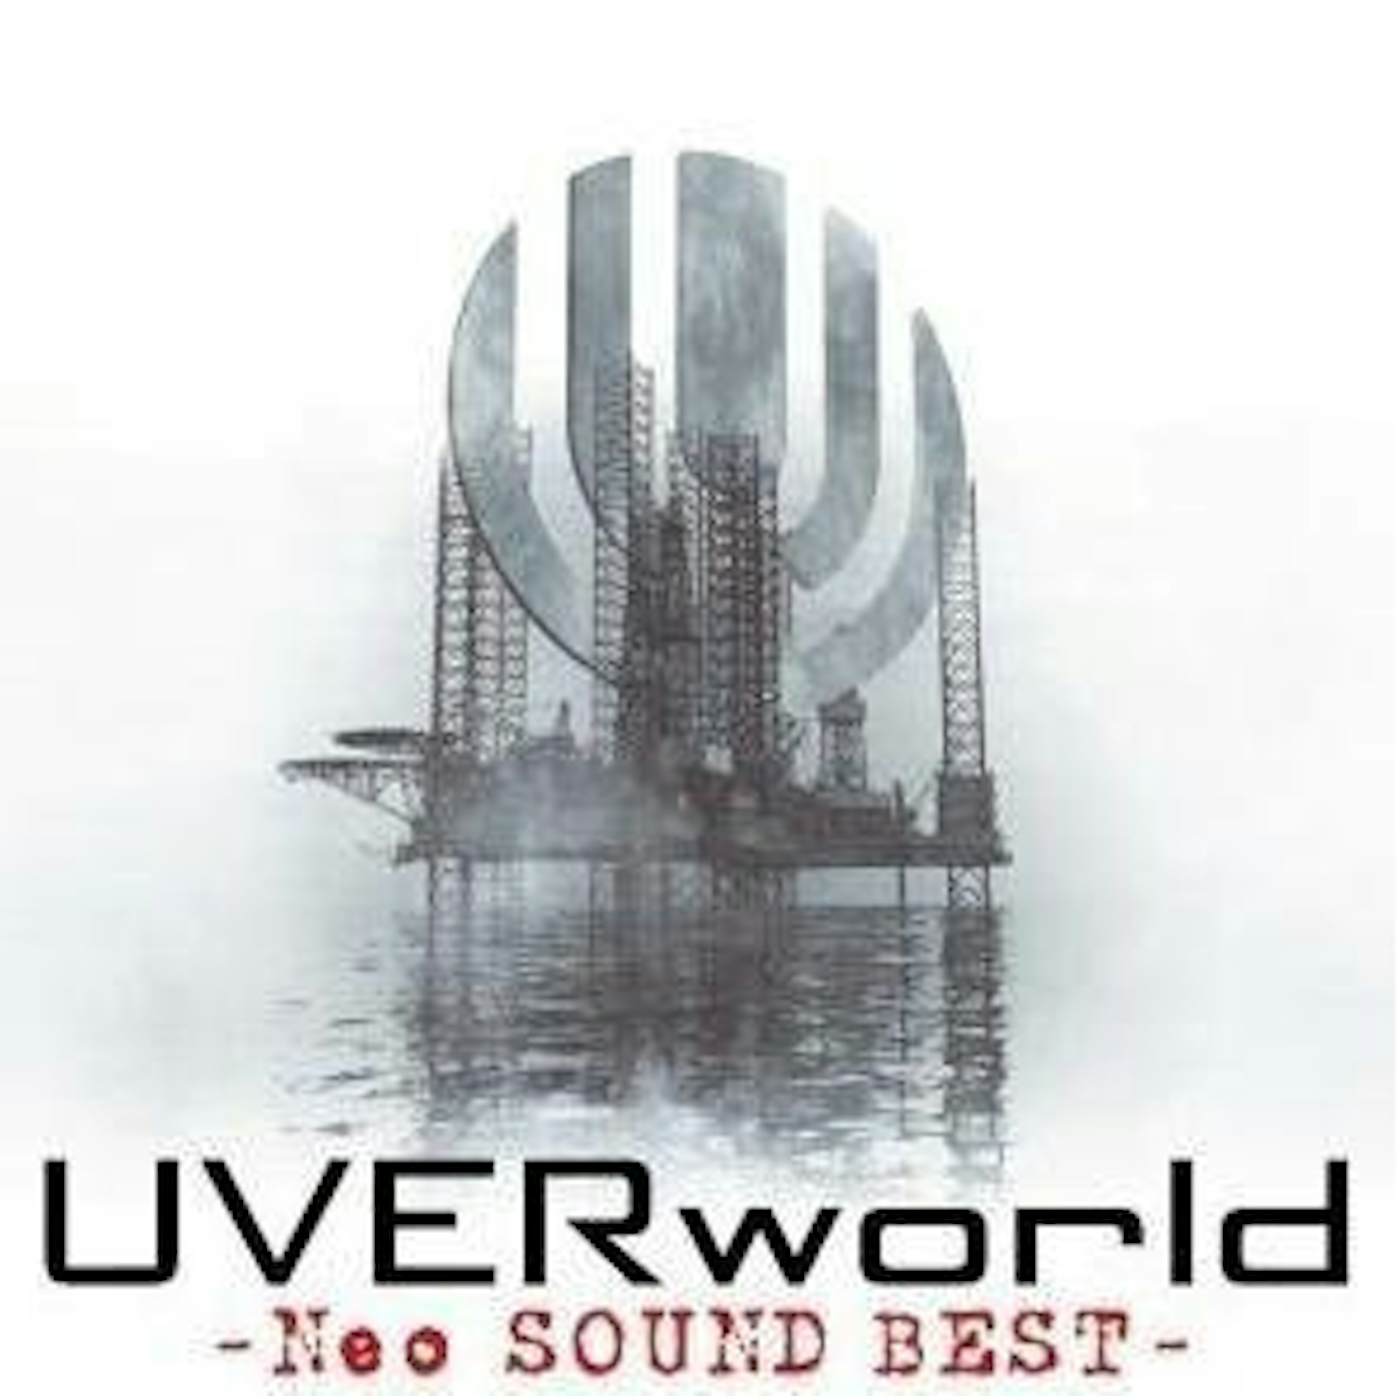 UVERworld NEO SOUND BEST CD